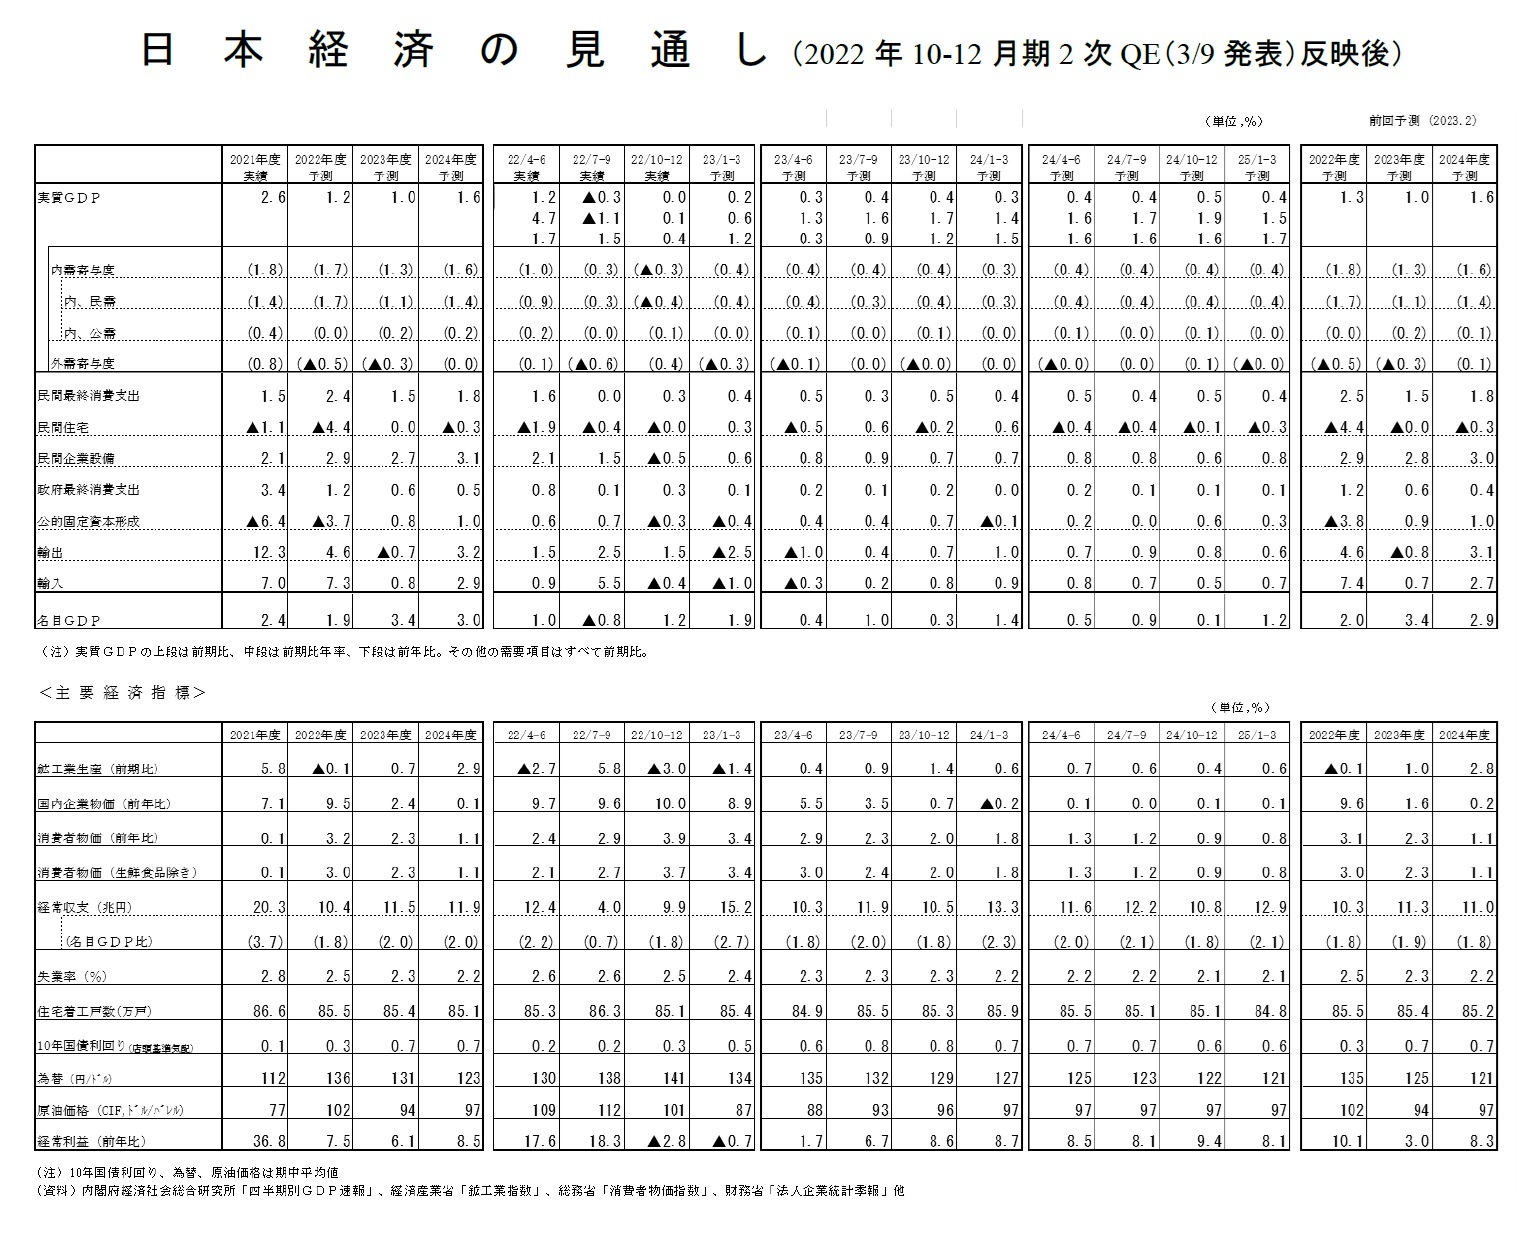 日本経済の見通し（2022年10-12月期2次QE（3/9発表）反映後）